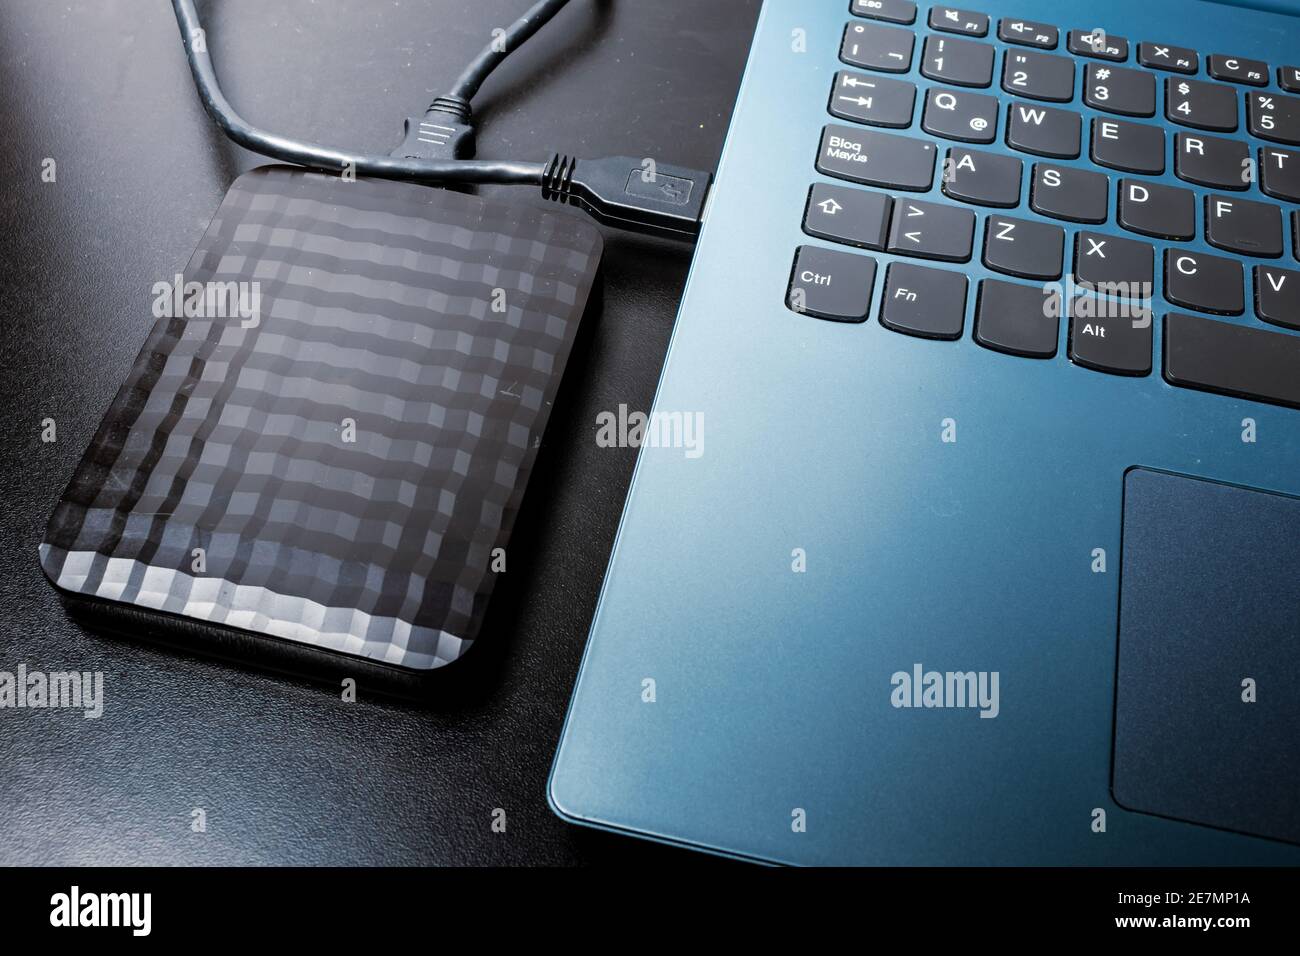 Externe Festplatte mit usb-Kabel an einen Laptop oder Notebook-Computer auf einer schwarzen Oberfläche angeschlossen. Concept-Technologie Stockfoto